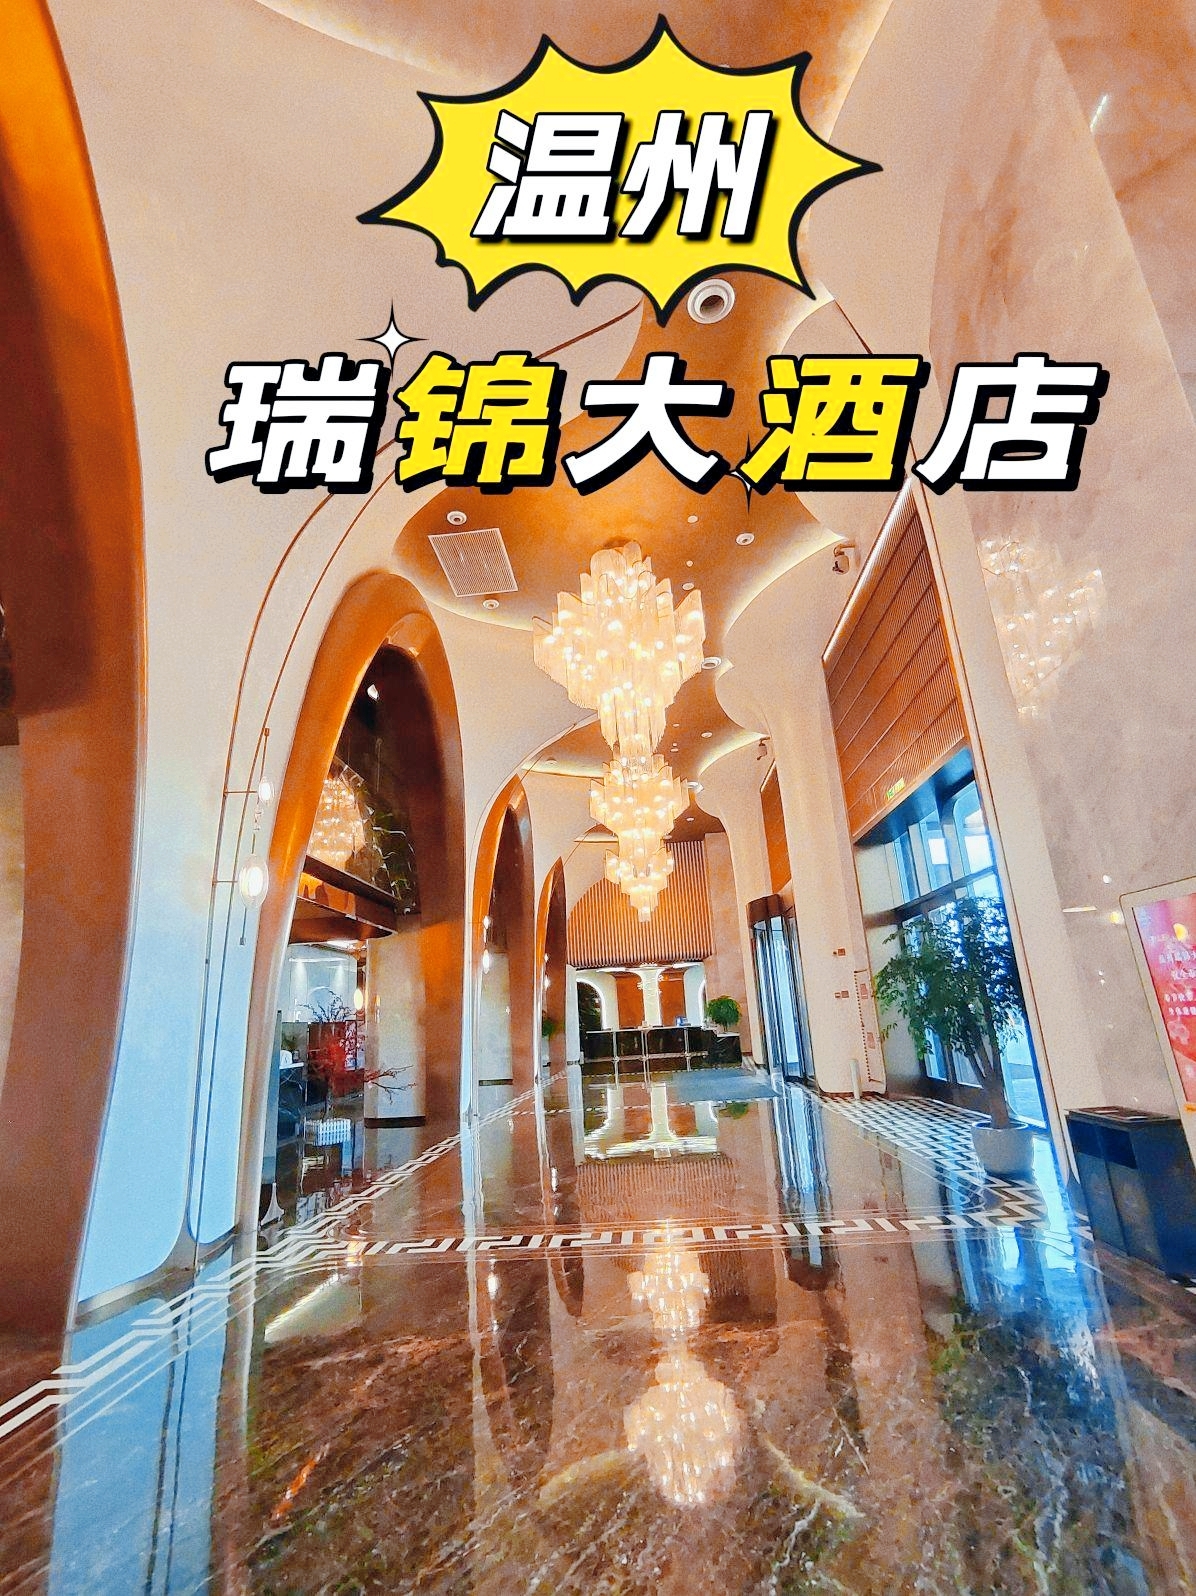 温州瓯北新晋宴会酒店，酒店大气上档次 ，还配有婚礼场所，十分浪